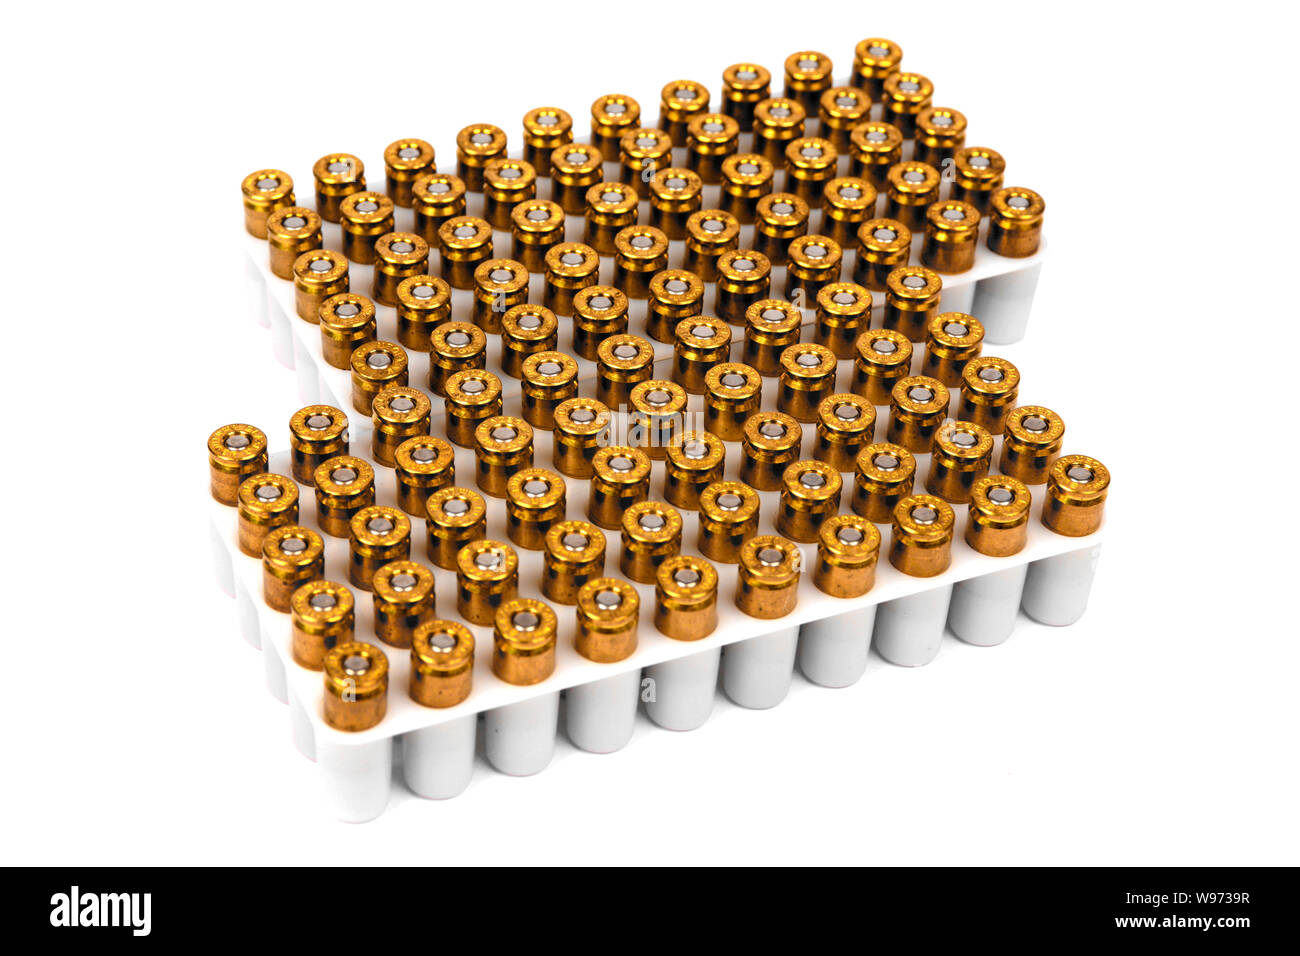 100 Umläufe von 9 mm Luger Messing mit Kupfer Tipps ammuntiion Stockfoto